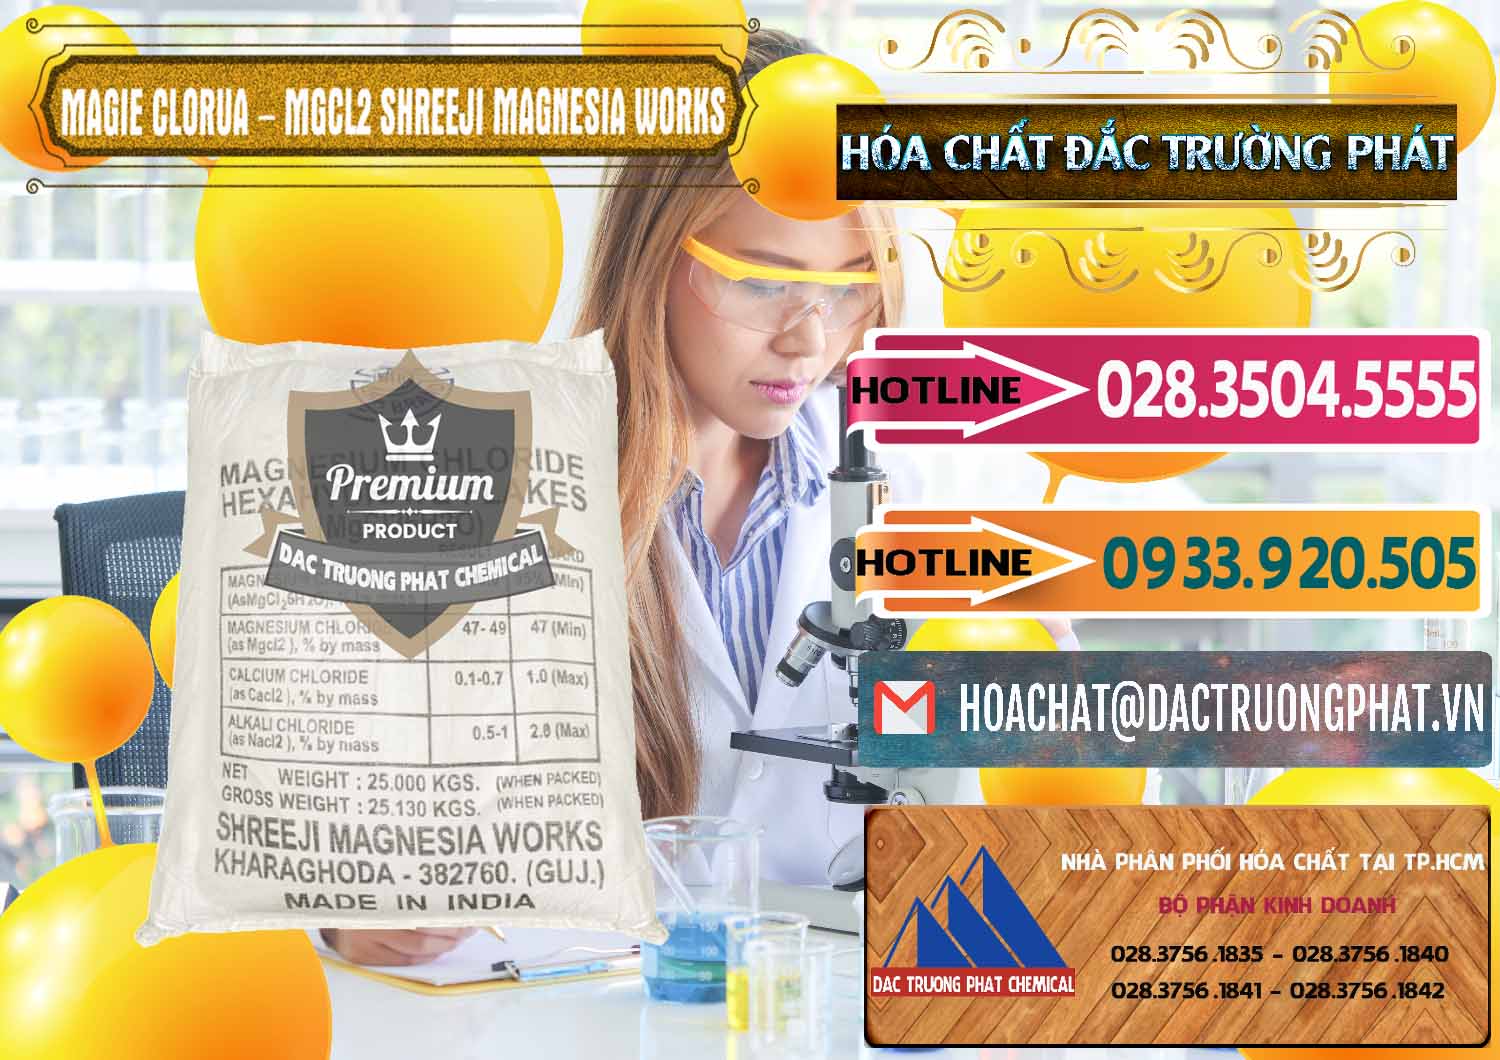 Cung cấp & bán Magie Clorua – MGCL2 Dạng Vảy Shreeji Magnesia Works Ấn Độ India - 0285 - Chuyên cung cấp & kinh doanh hóa chất tại TP.HCM - dactruongphat.vn